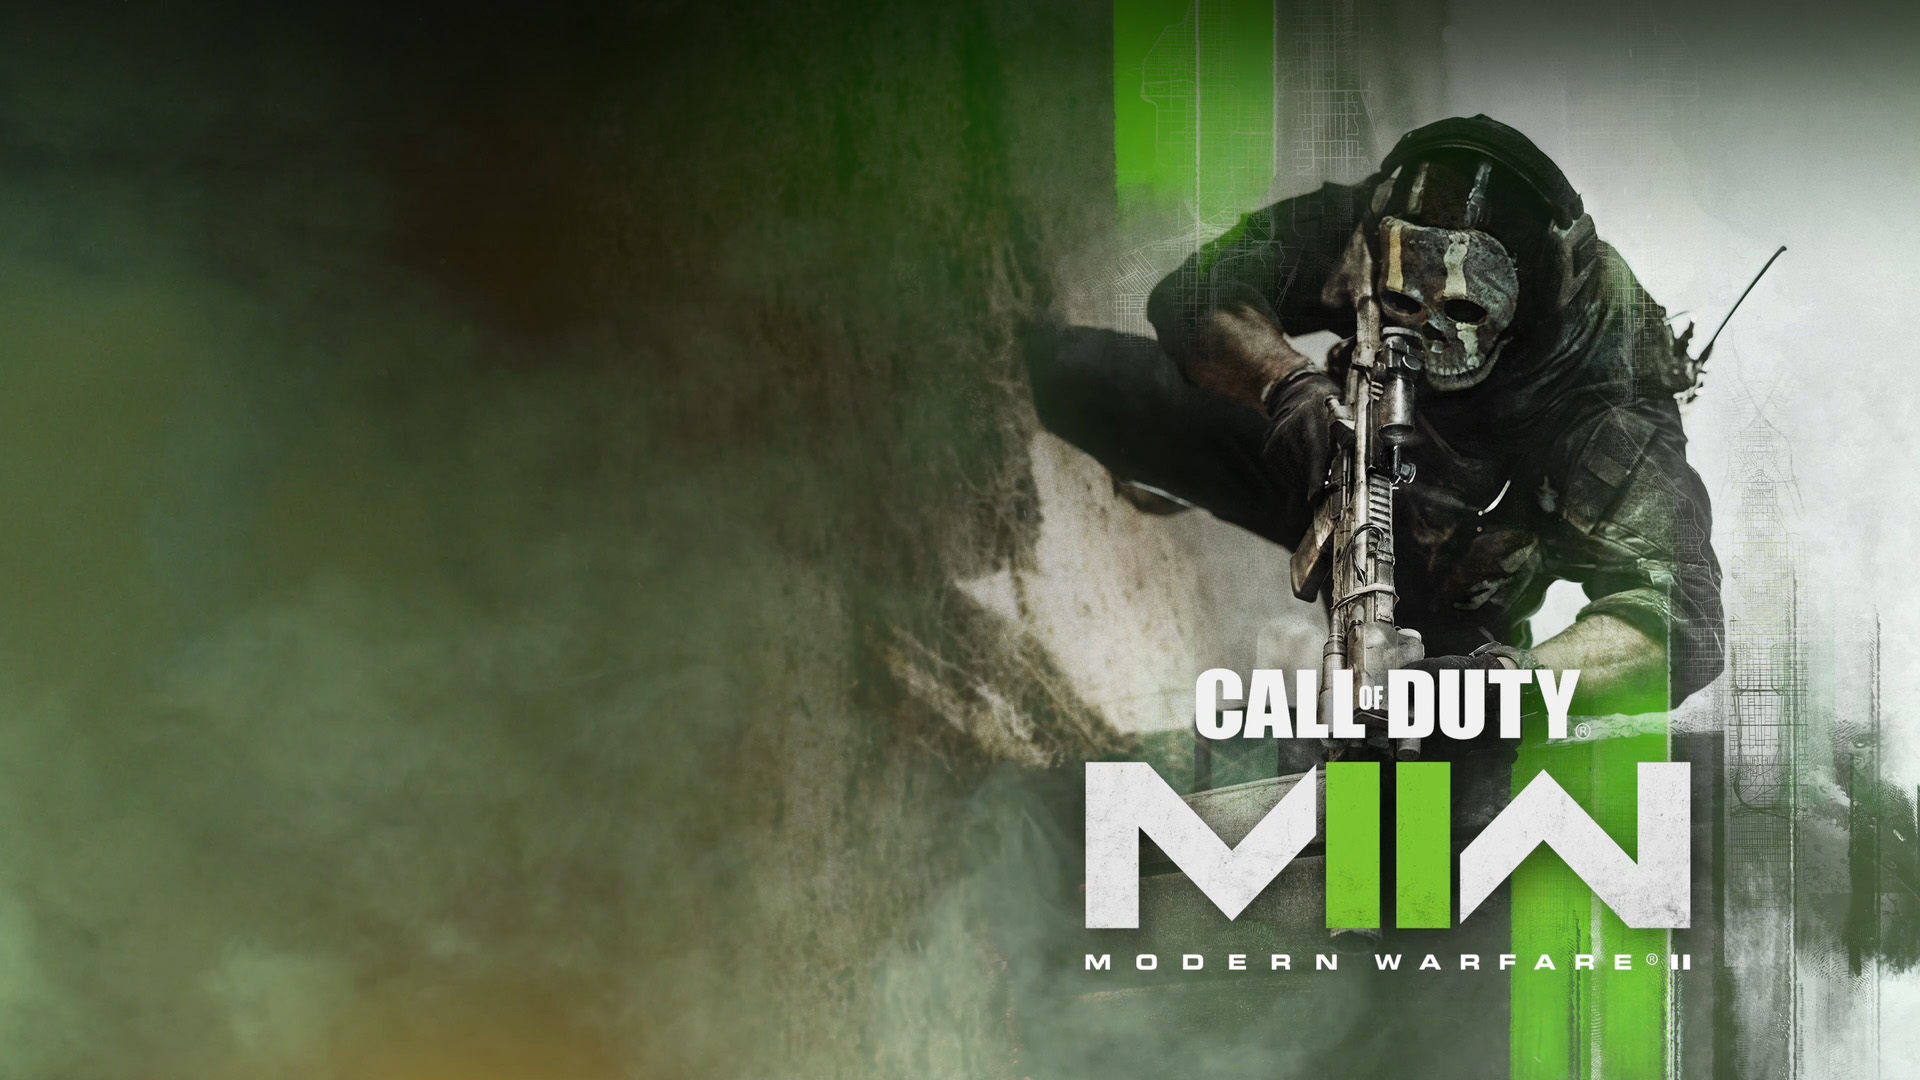 Call of Duty: Modern Warfare II, Een operator hurkt ter voorbereiding.